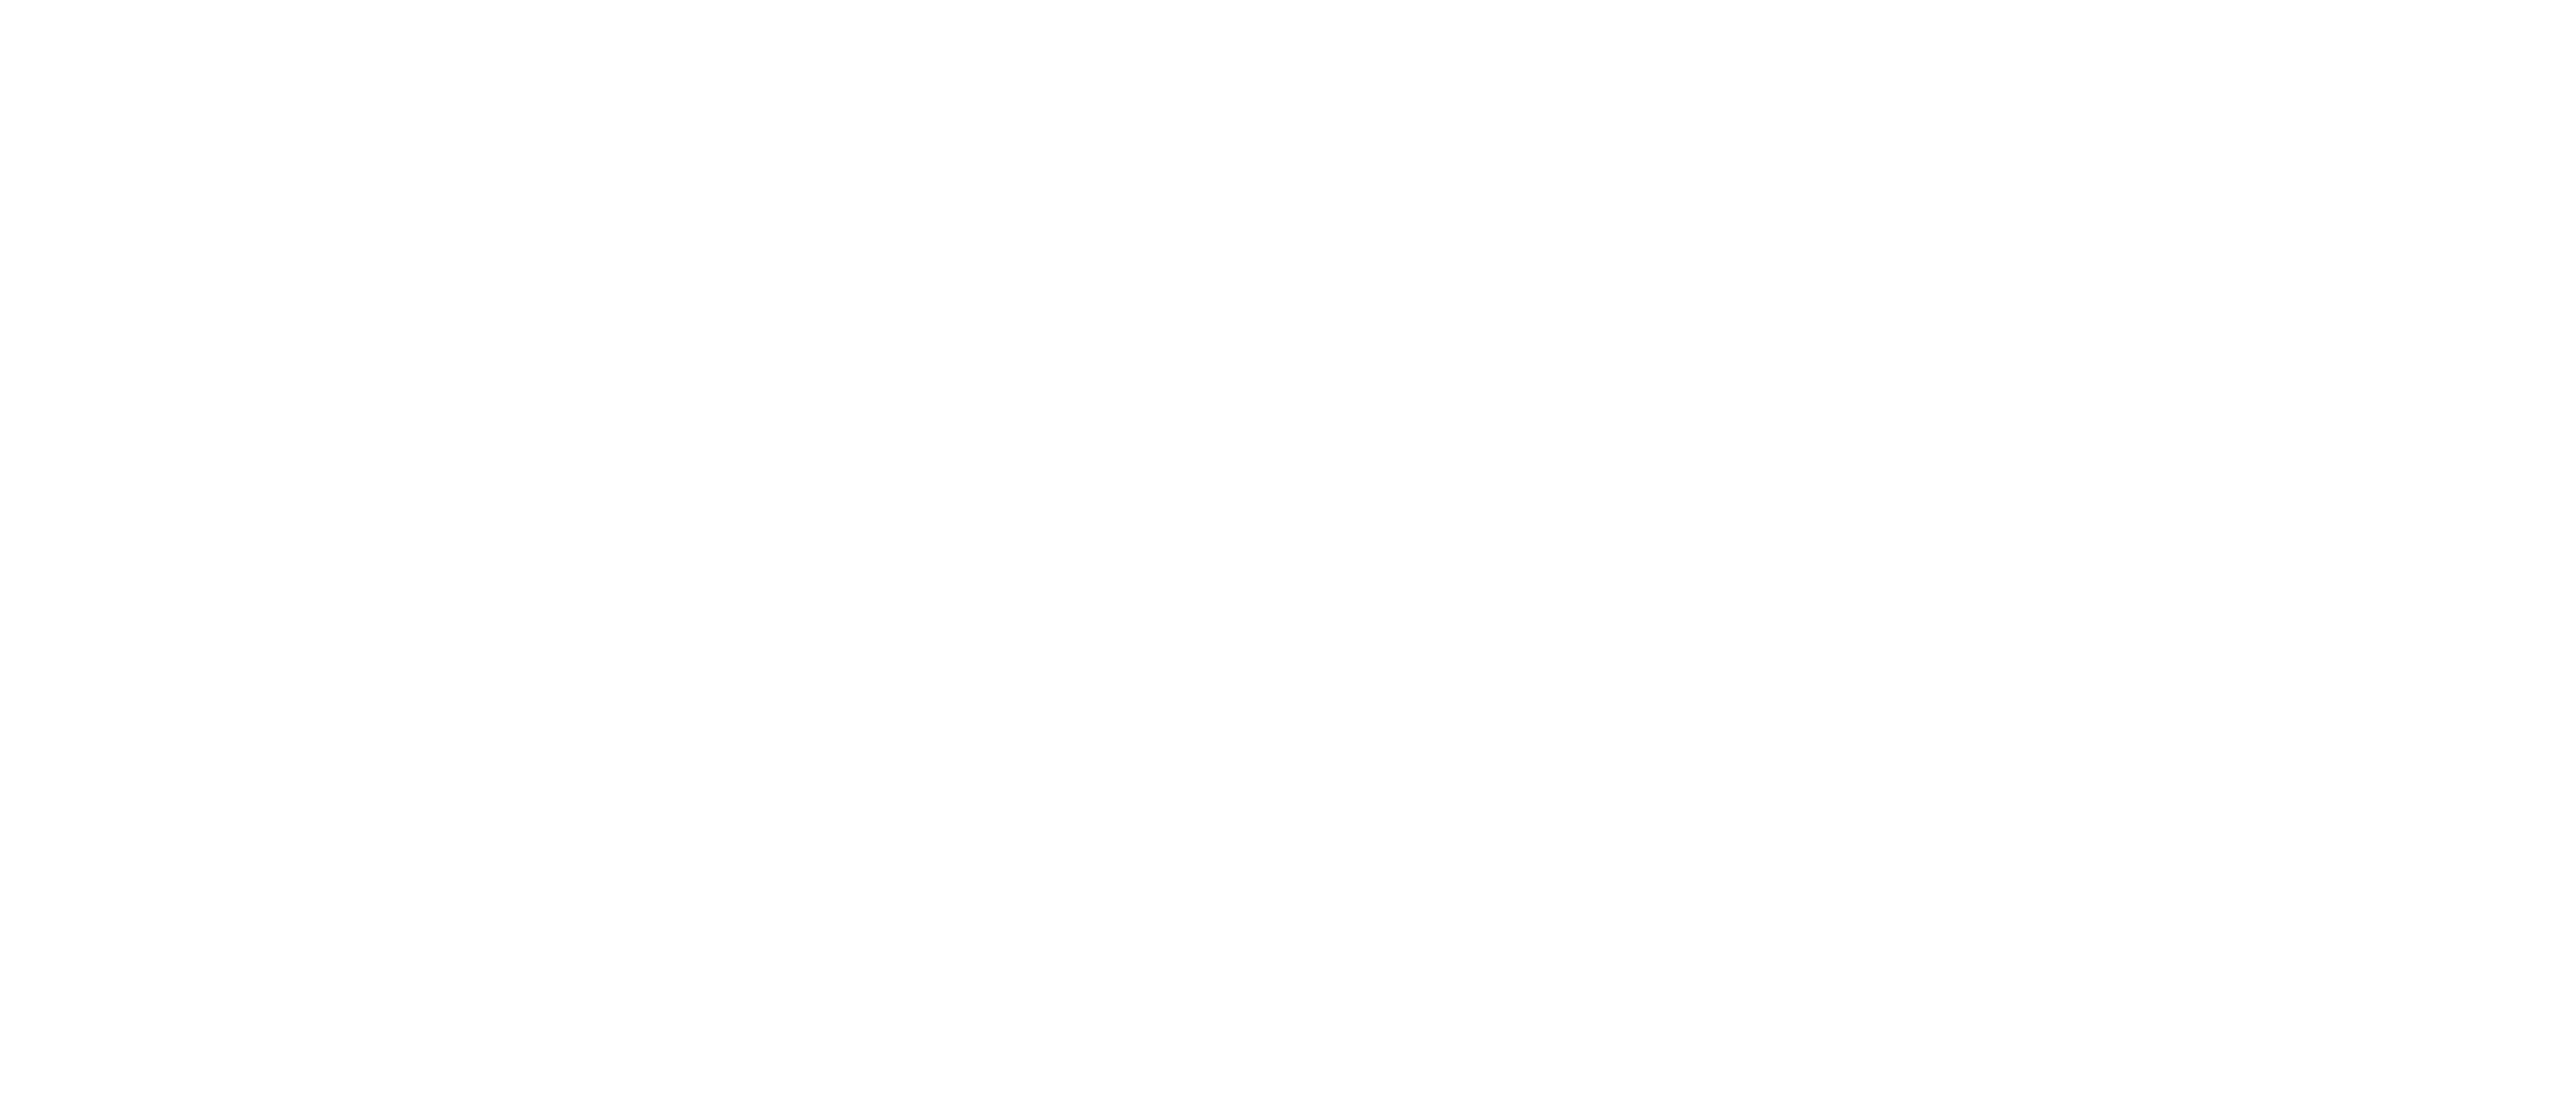 amateur golfers association